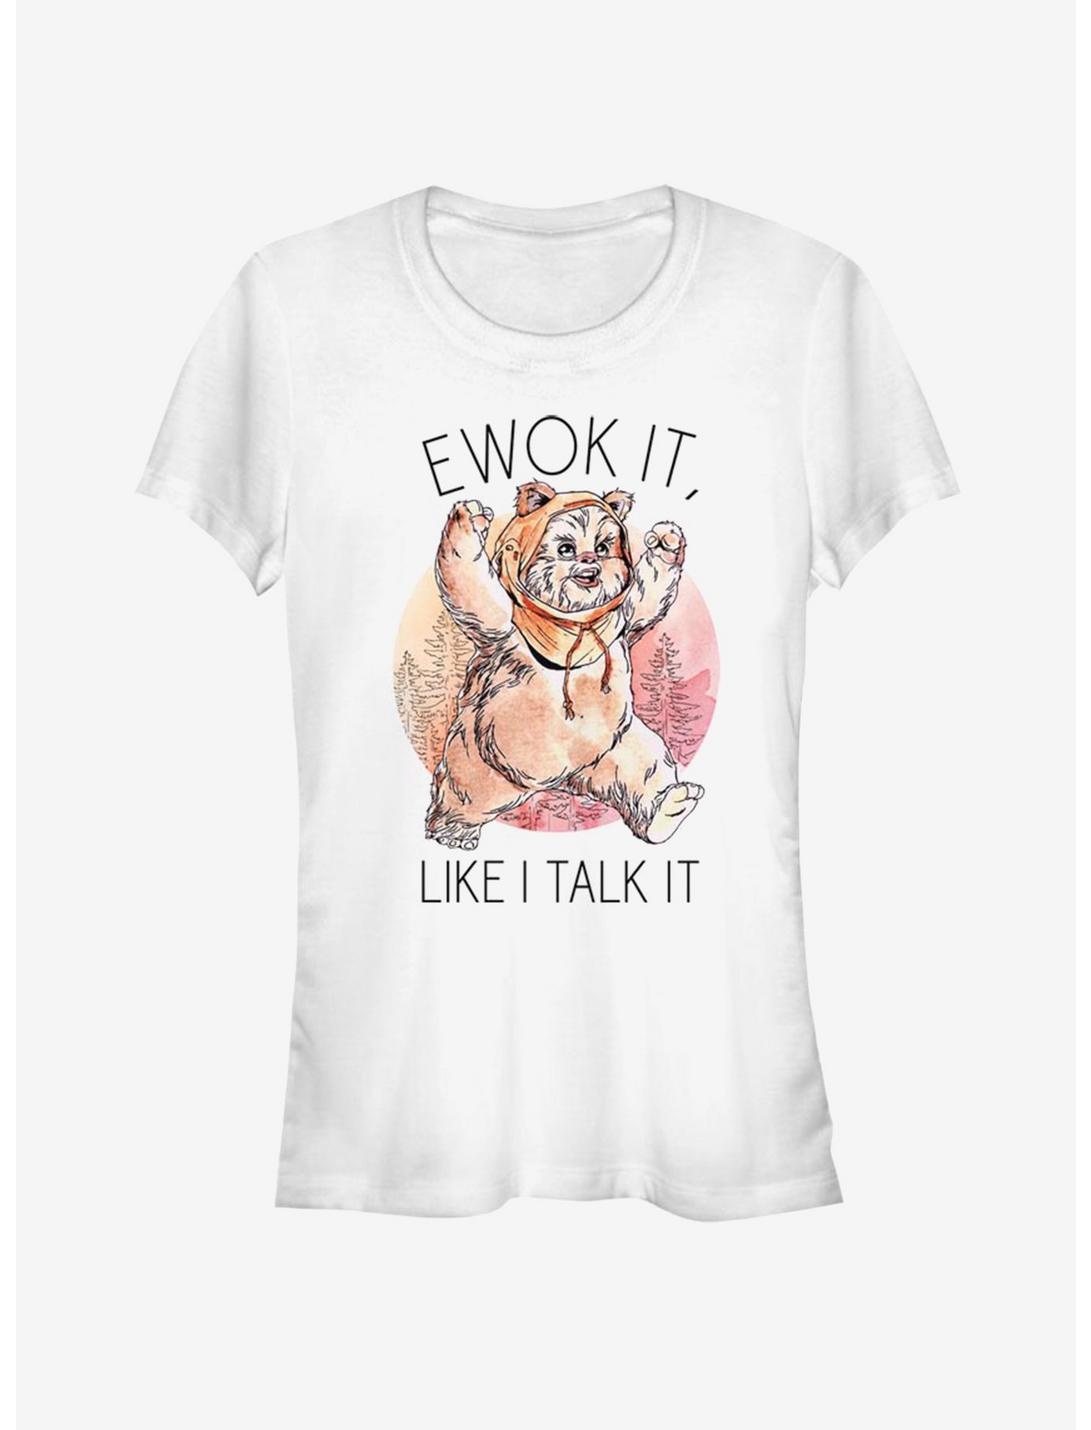 Star Wars Ewok It Girls T-Shirt, WHITE, hi-res